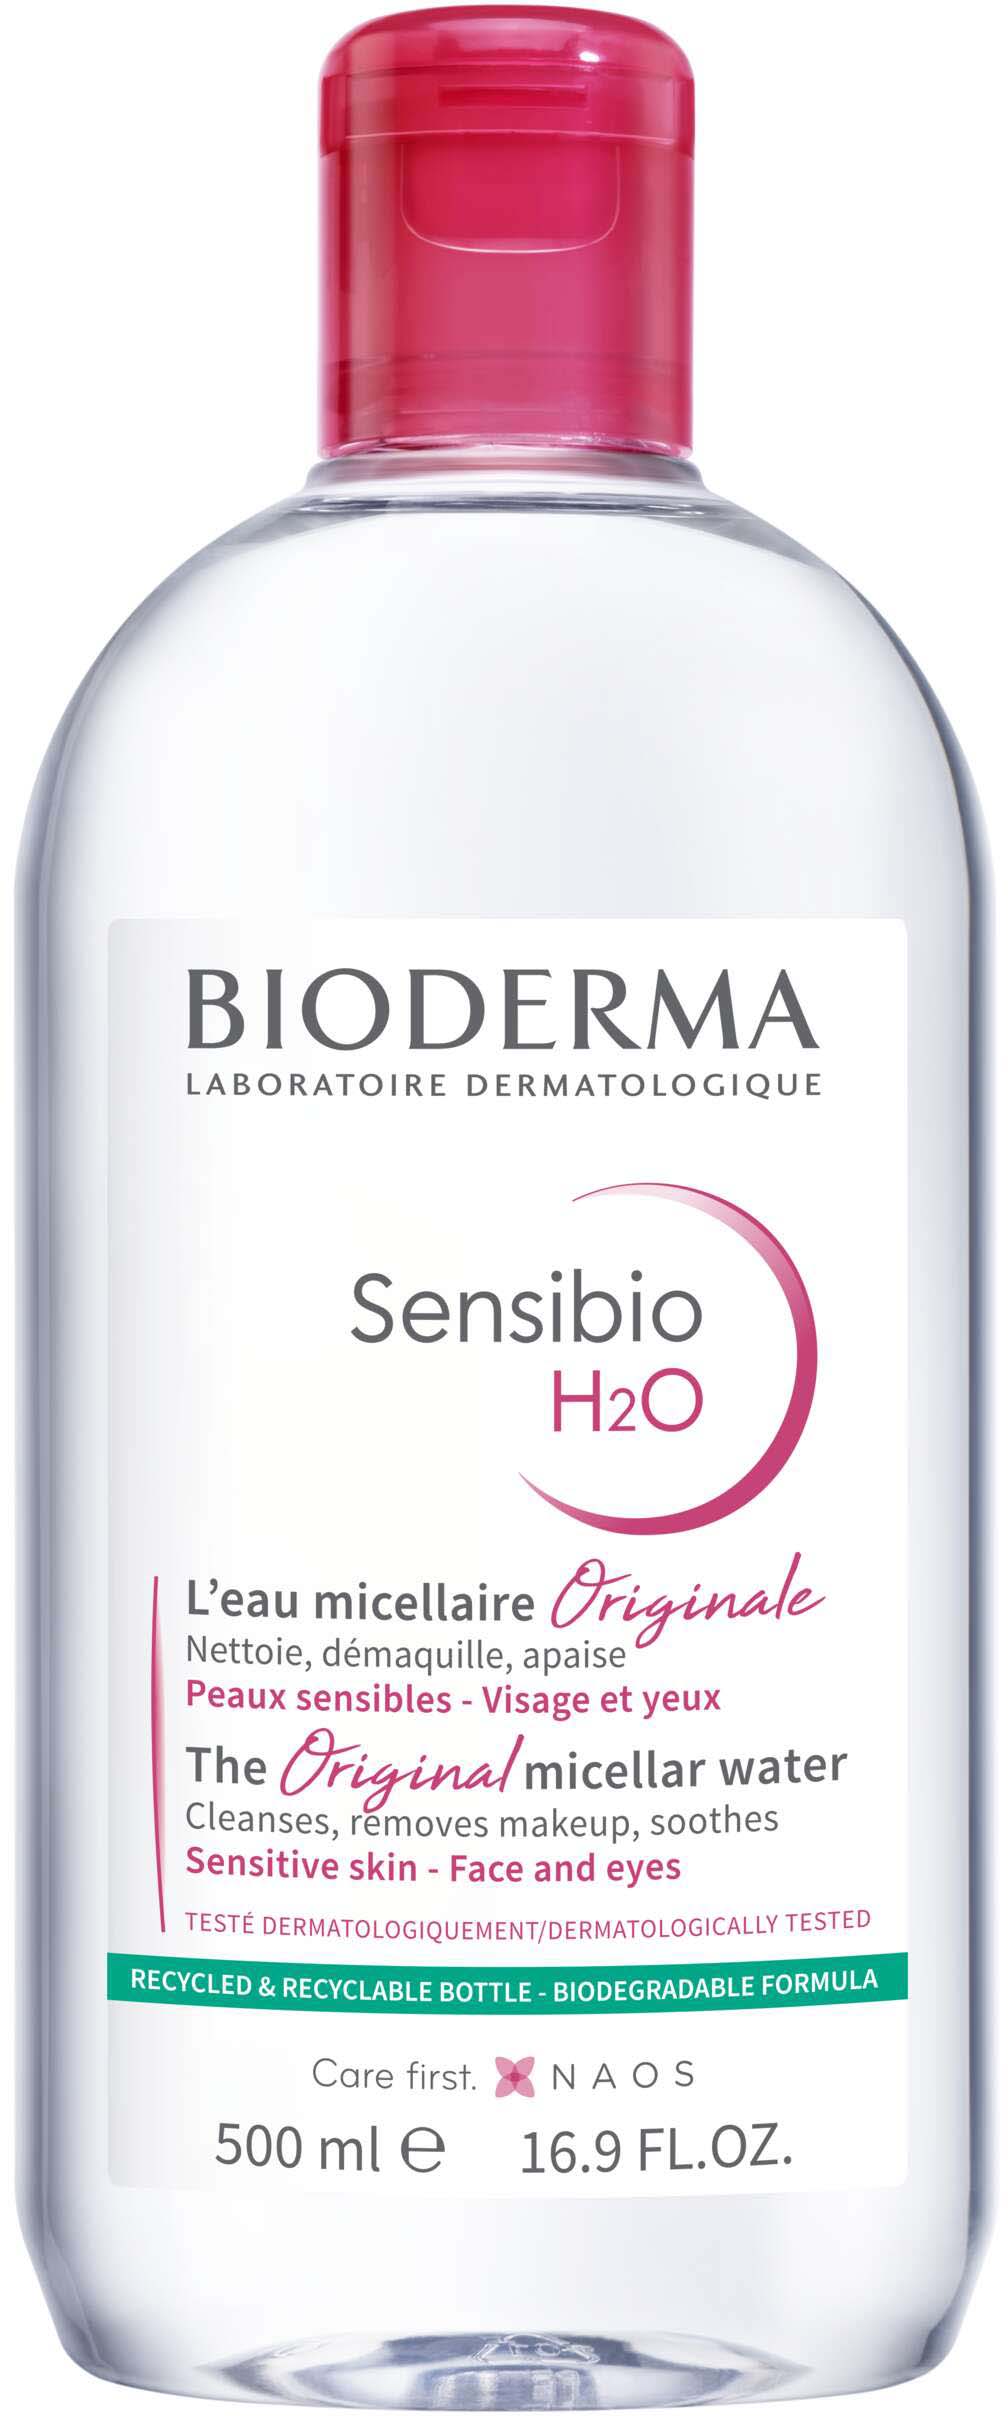 Bioderma Sensibio H2O Soothing Micellar Cleansing Water and Makeup